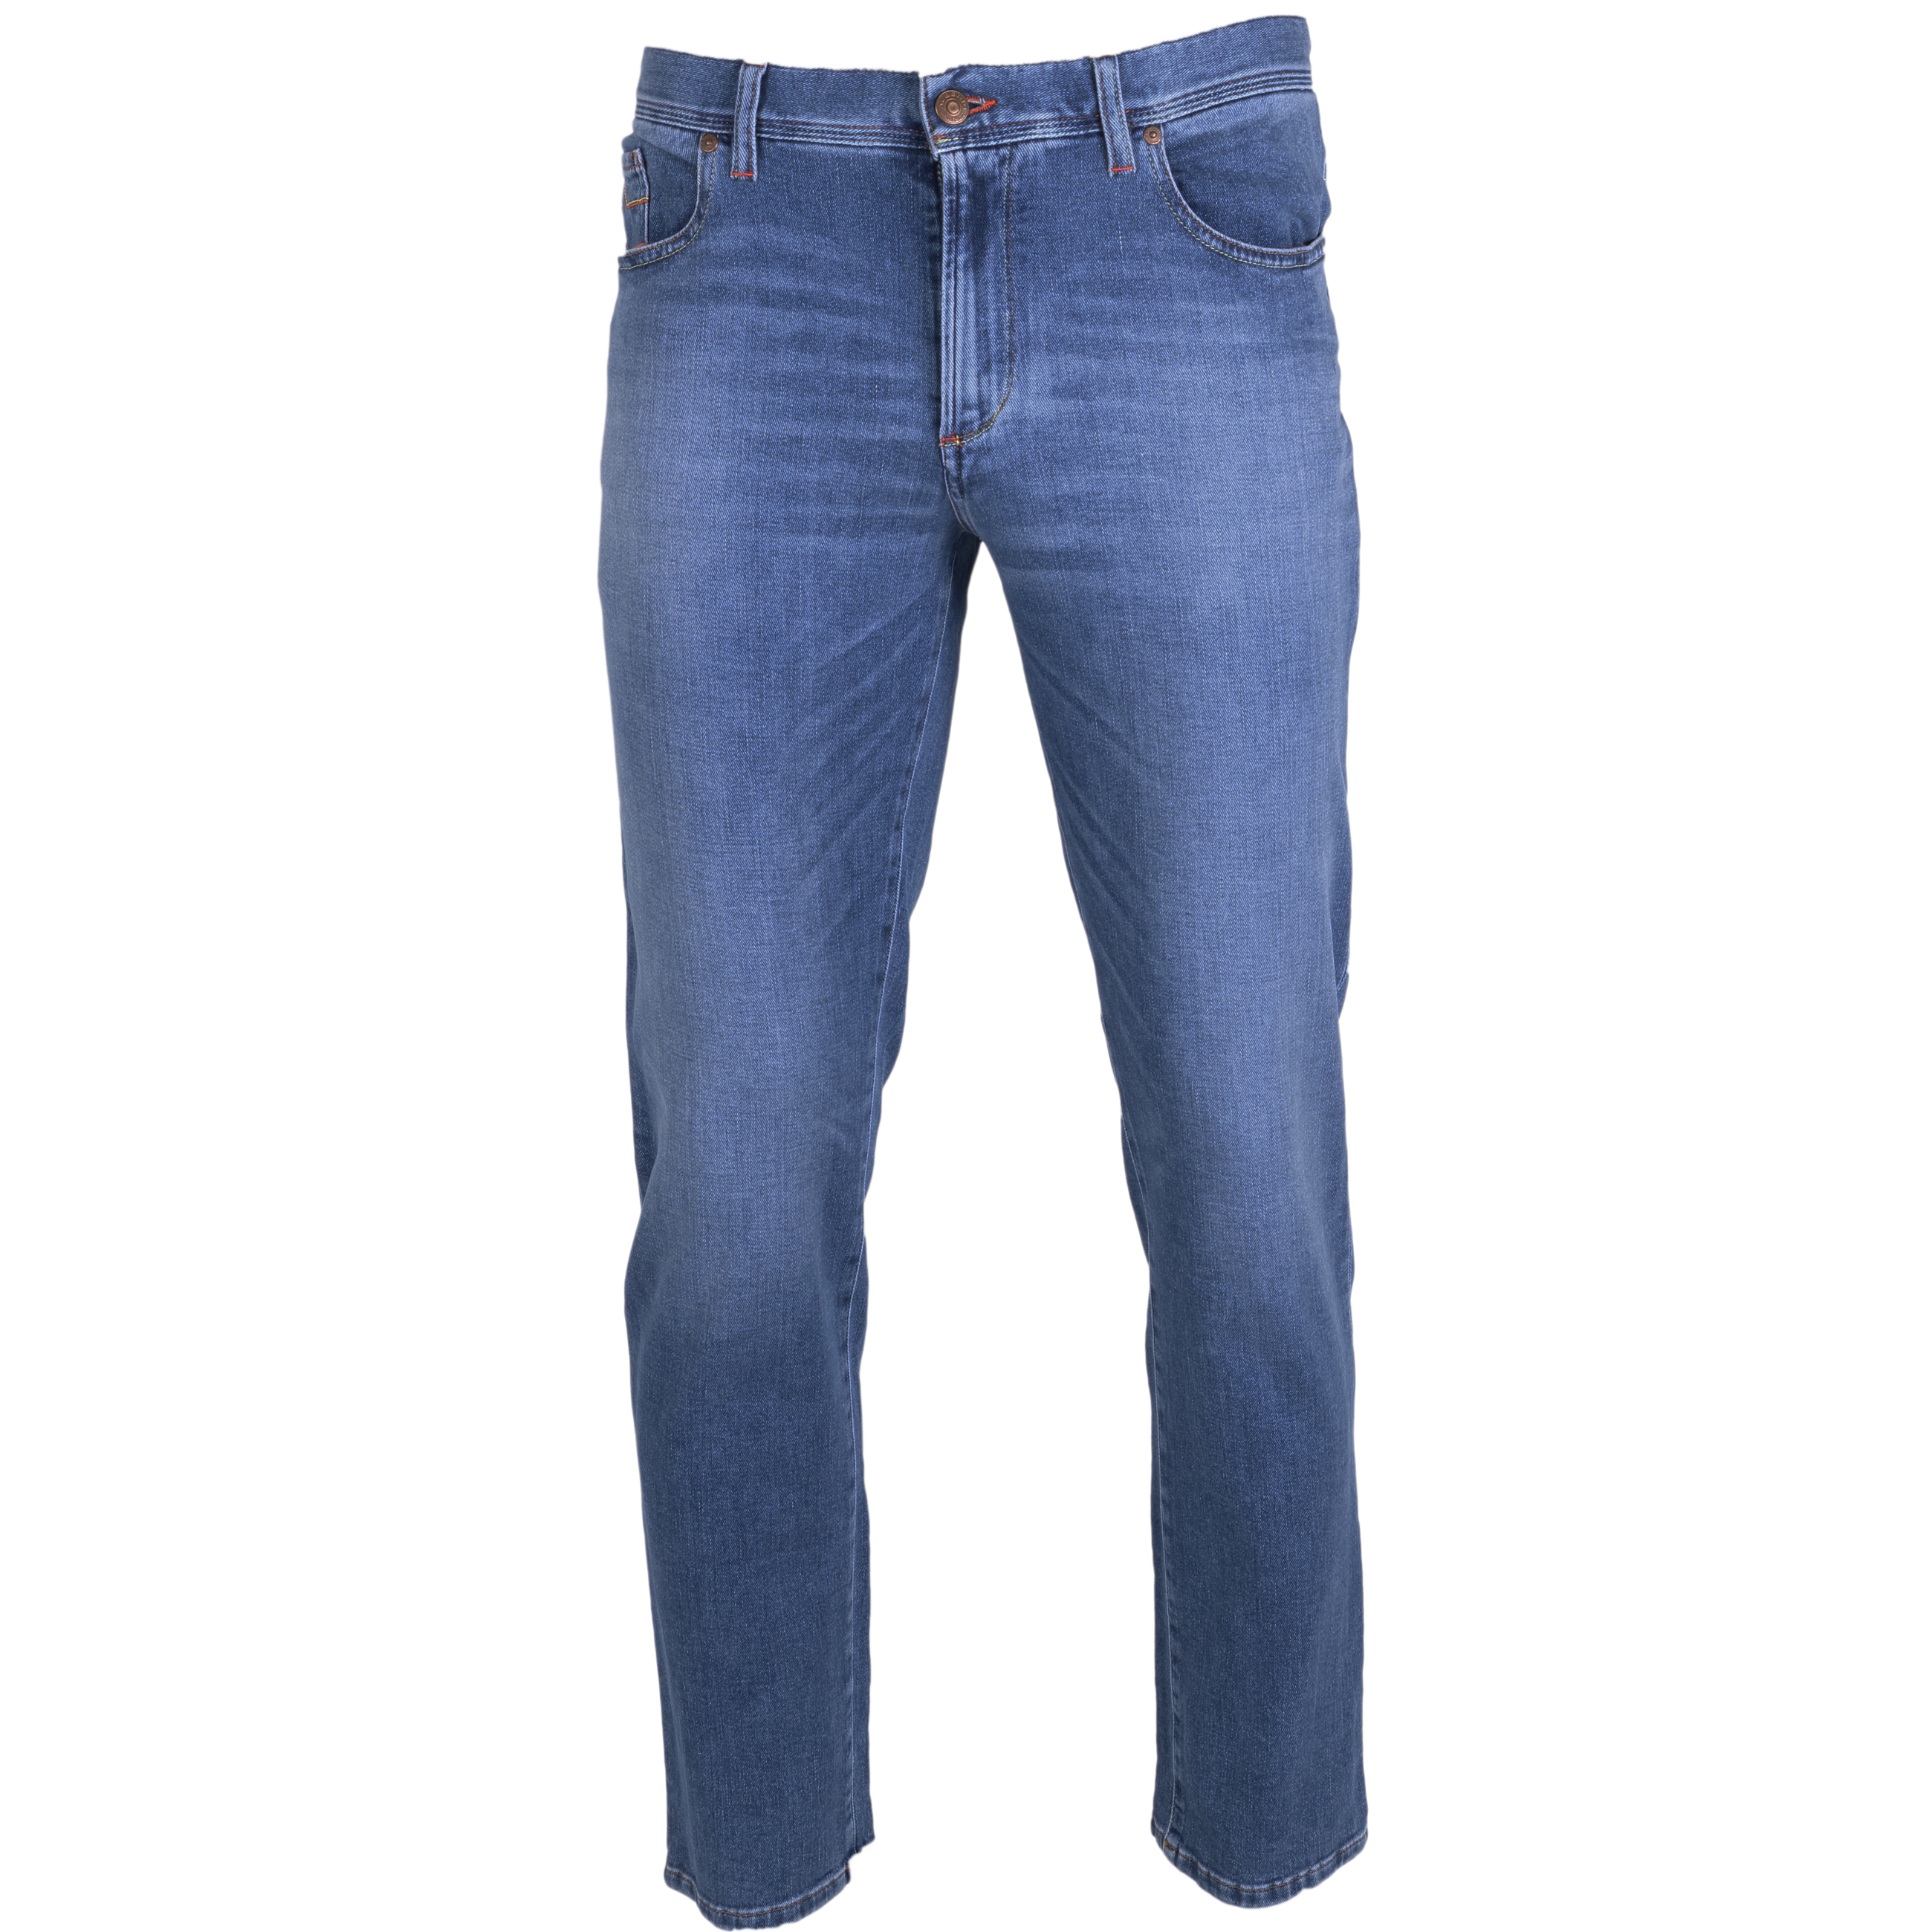 Alberto Jeans Pipe regular fit 35/34 blau